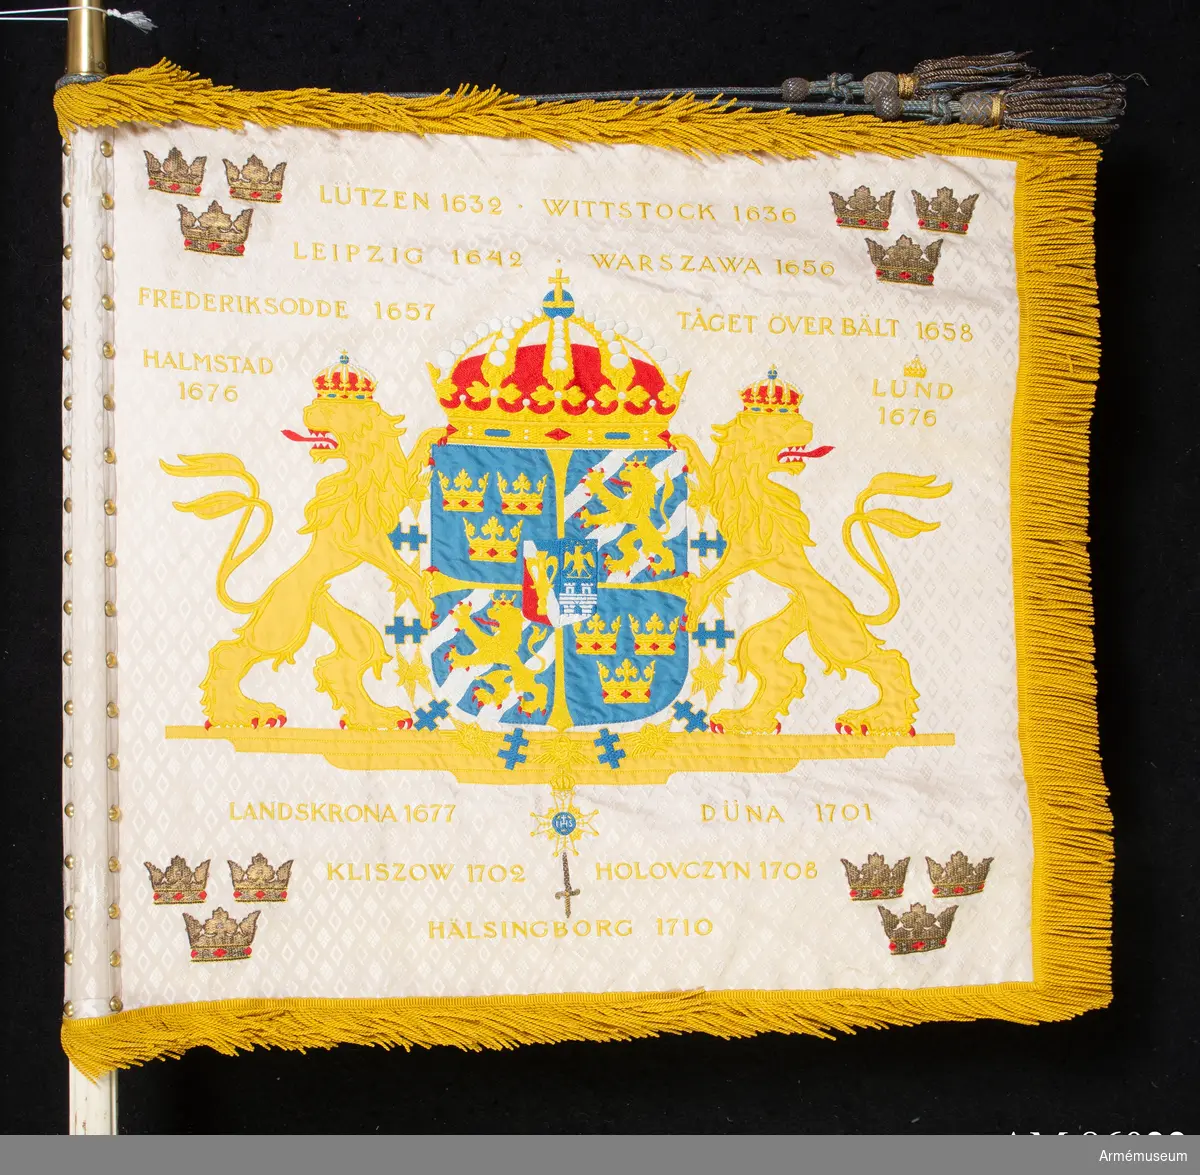 Dubbelsidigt standar av vitt mönstrat siden med applikationsbroderier och flerfärgade broderier i silketråd samt metalltråd i läggsöm. Gula fransar.

På vit duk i mitten stora riksvapnet utan mantel enligt lag om Sveriges riksvapen. I vardera hörnet tre öppna gula kronor ställda två och en. Segernamn i gult vågrätt placerade ovanför och under riksvapnet.
Segernamn:
Lützen 1632 Lund 1676 (under kunglig krona)
Wittstock 1636 Landskrona 1677
Leipzig 1642 Düna 1701
Warszawa 1656 Kliszow 1702
Fredriksodde 1657 Holovczyn 1708
Tåget över Bält 1658 Hälsingborg 1710
Halmstad 1676